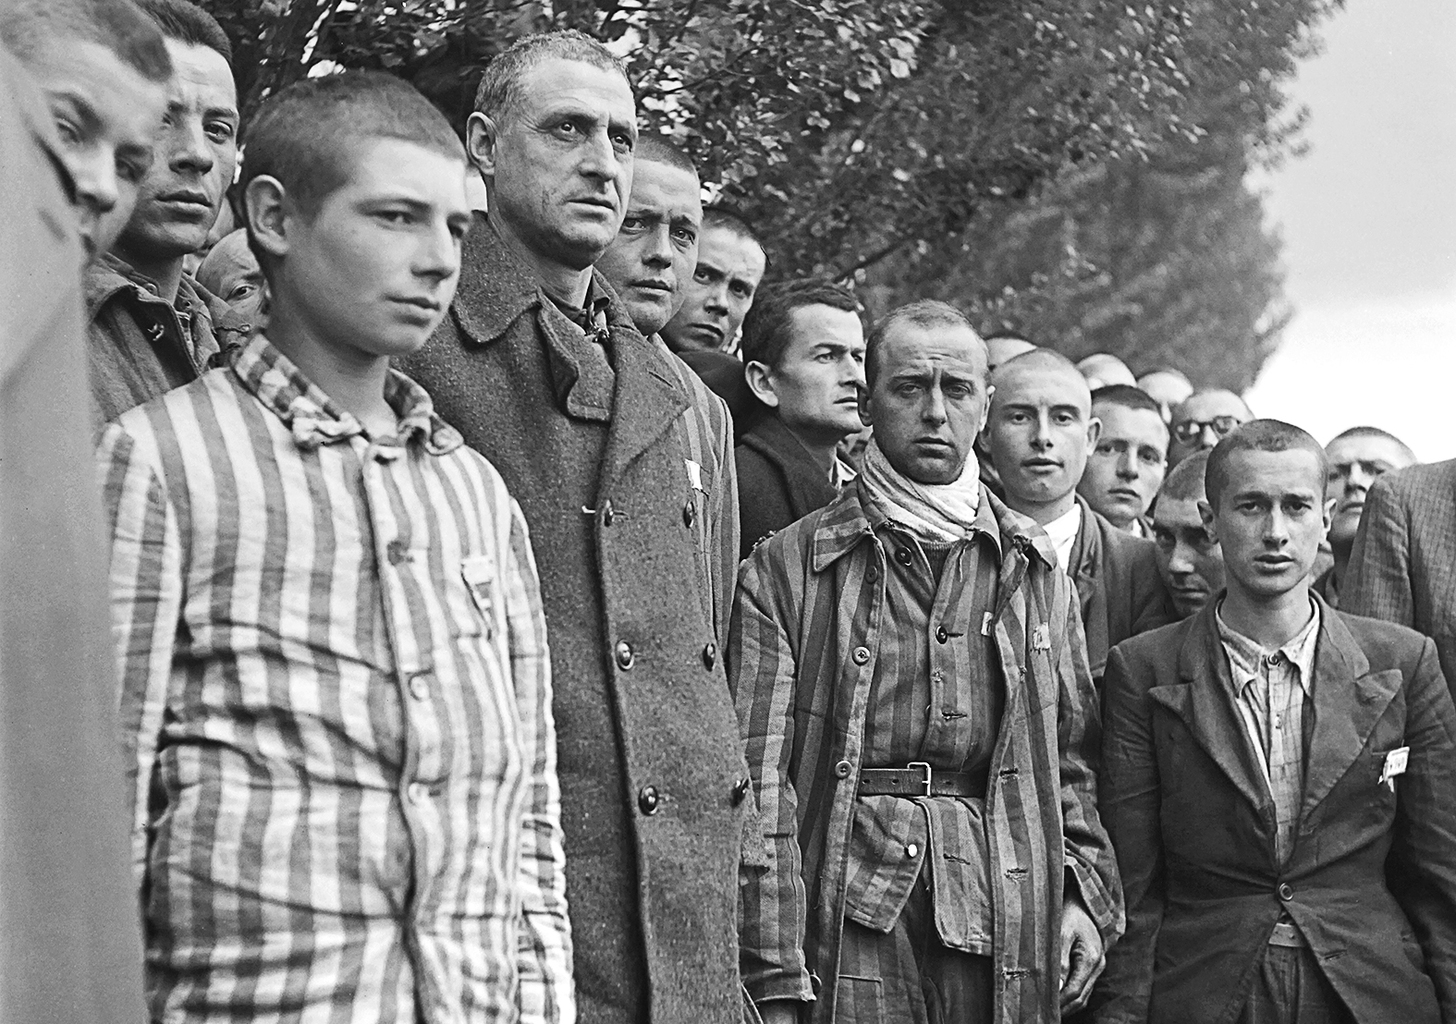 Foglyok a Dachau-i koncentrációs tábor felszabadításának napján 1945. április 29-én #moszkvater